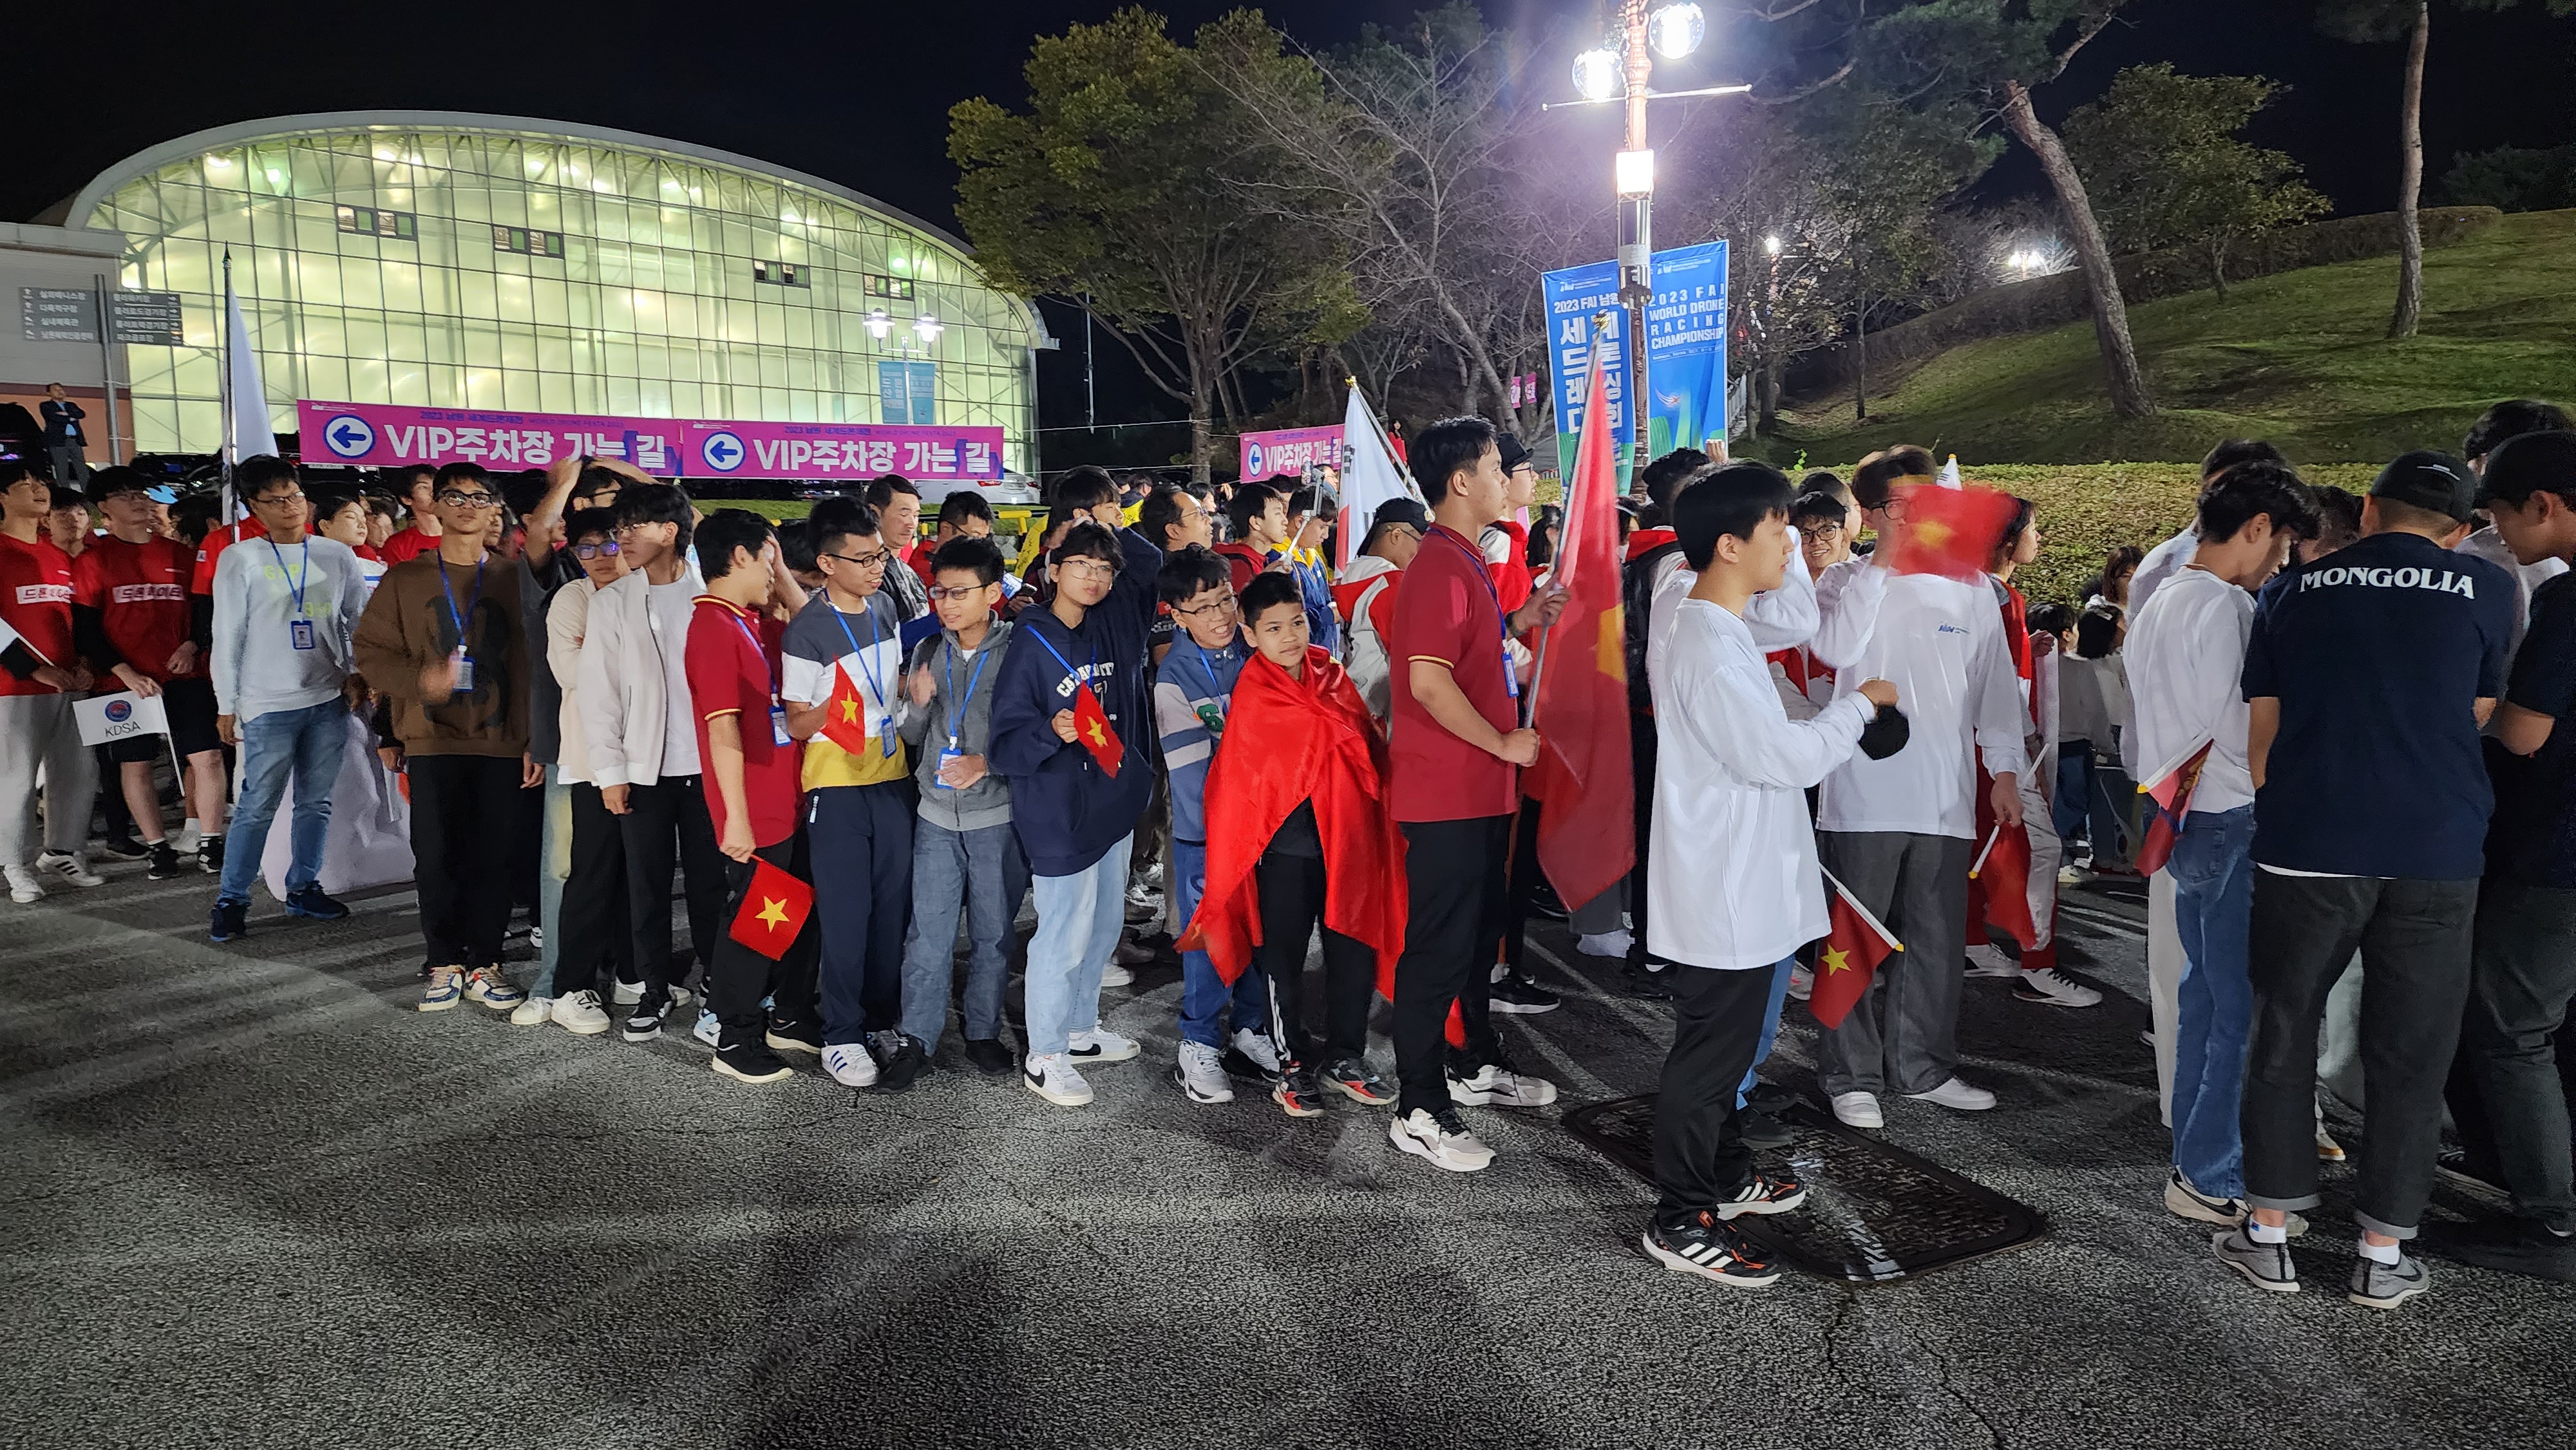 Đoàn Việt Nam tham gia diễu hành trong lễ khai mạc. Ảnh: S3